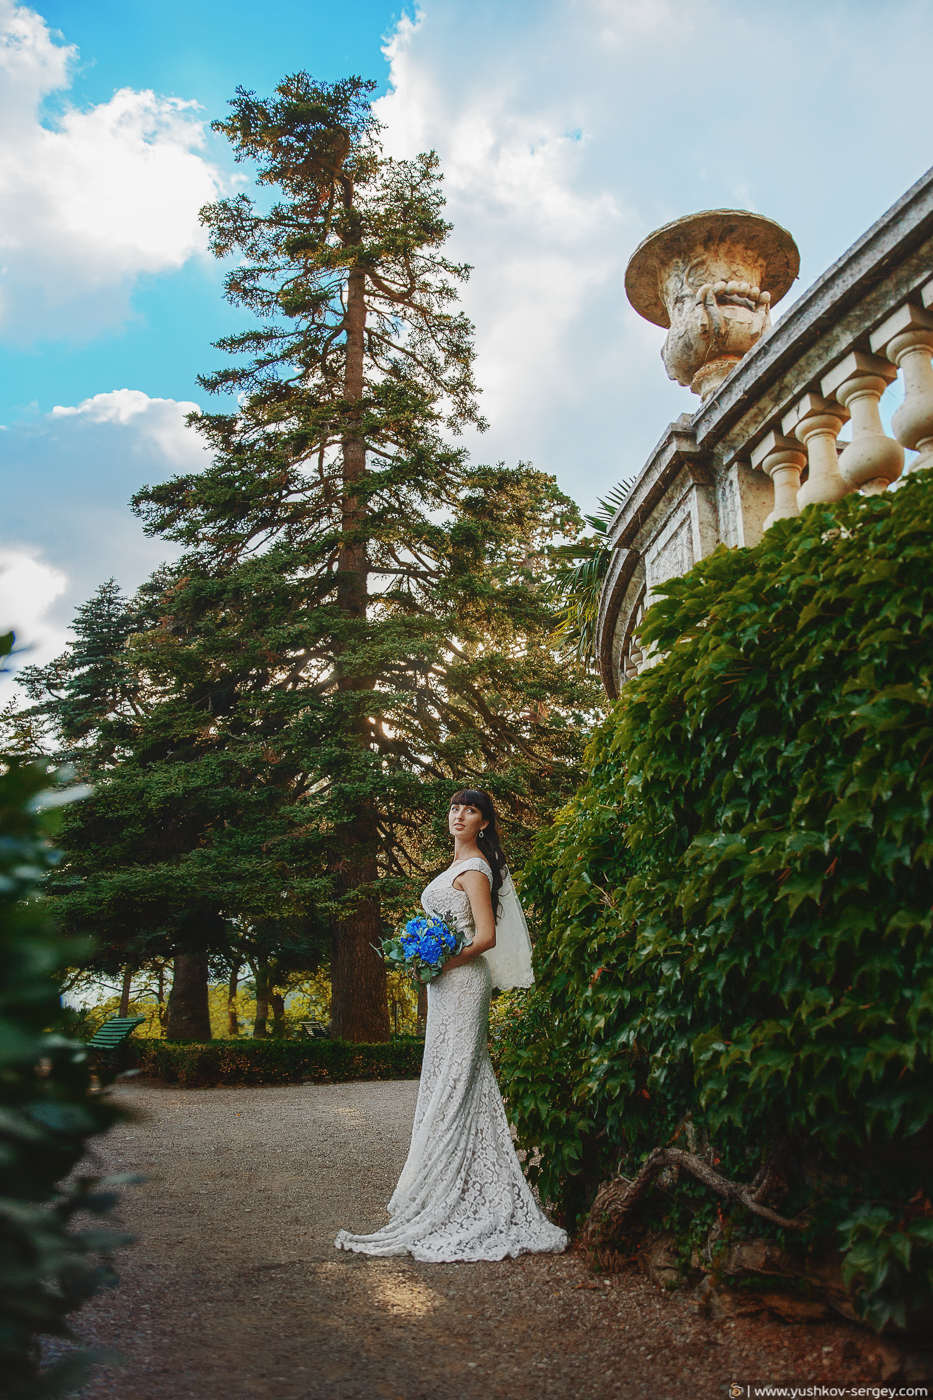 Wedding in Crimea – Ai-Petri and Massandra palace